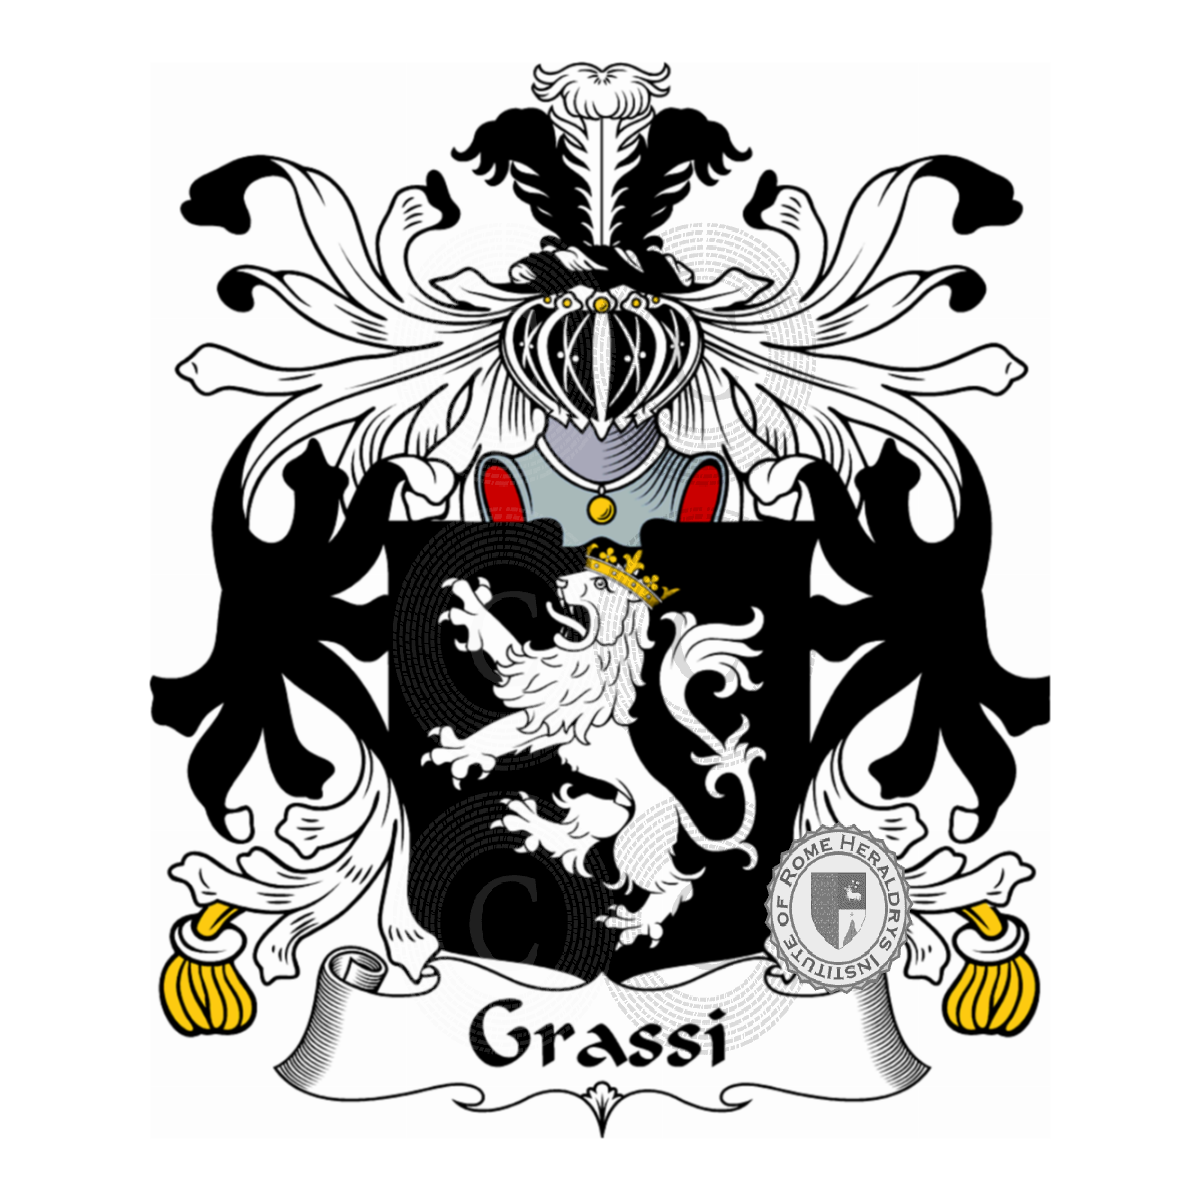 Stemma della famigliaGrassi, Crassi,de Grassi,de Grassis,Grassa